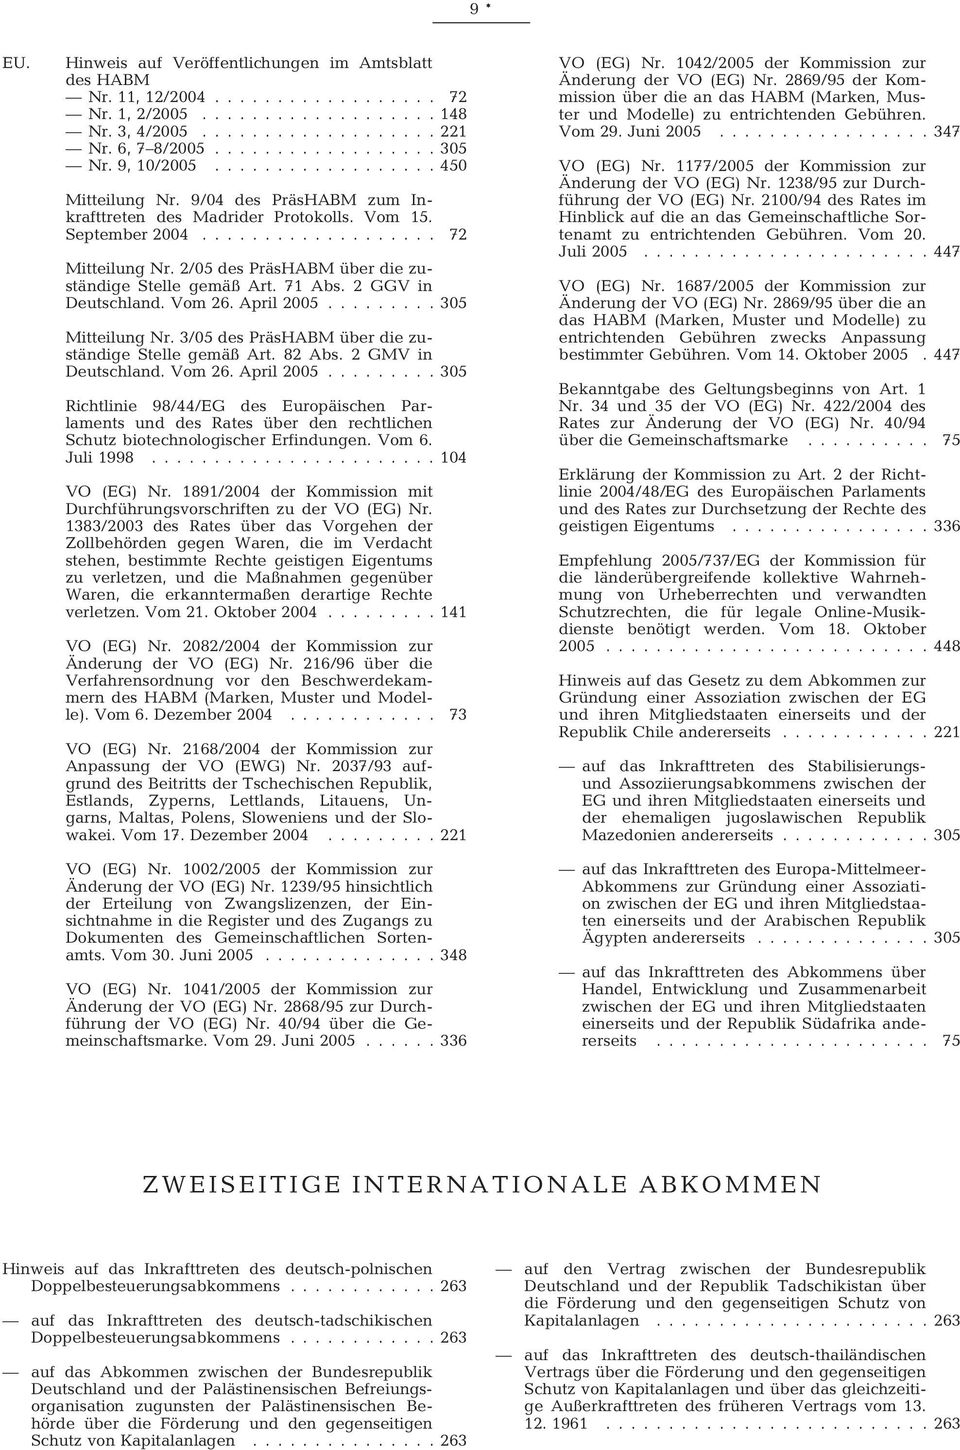 2/05 des PräsHABM über die zuständige Stelle gemäß Art. 71 Abs. 2 GGV in Deutschland. Vom 26. April 2005......... 305 Mitteilung Nr. 3/05 des PräsHABM über die zuständige Stelle gemäß Art. 82 Abs.